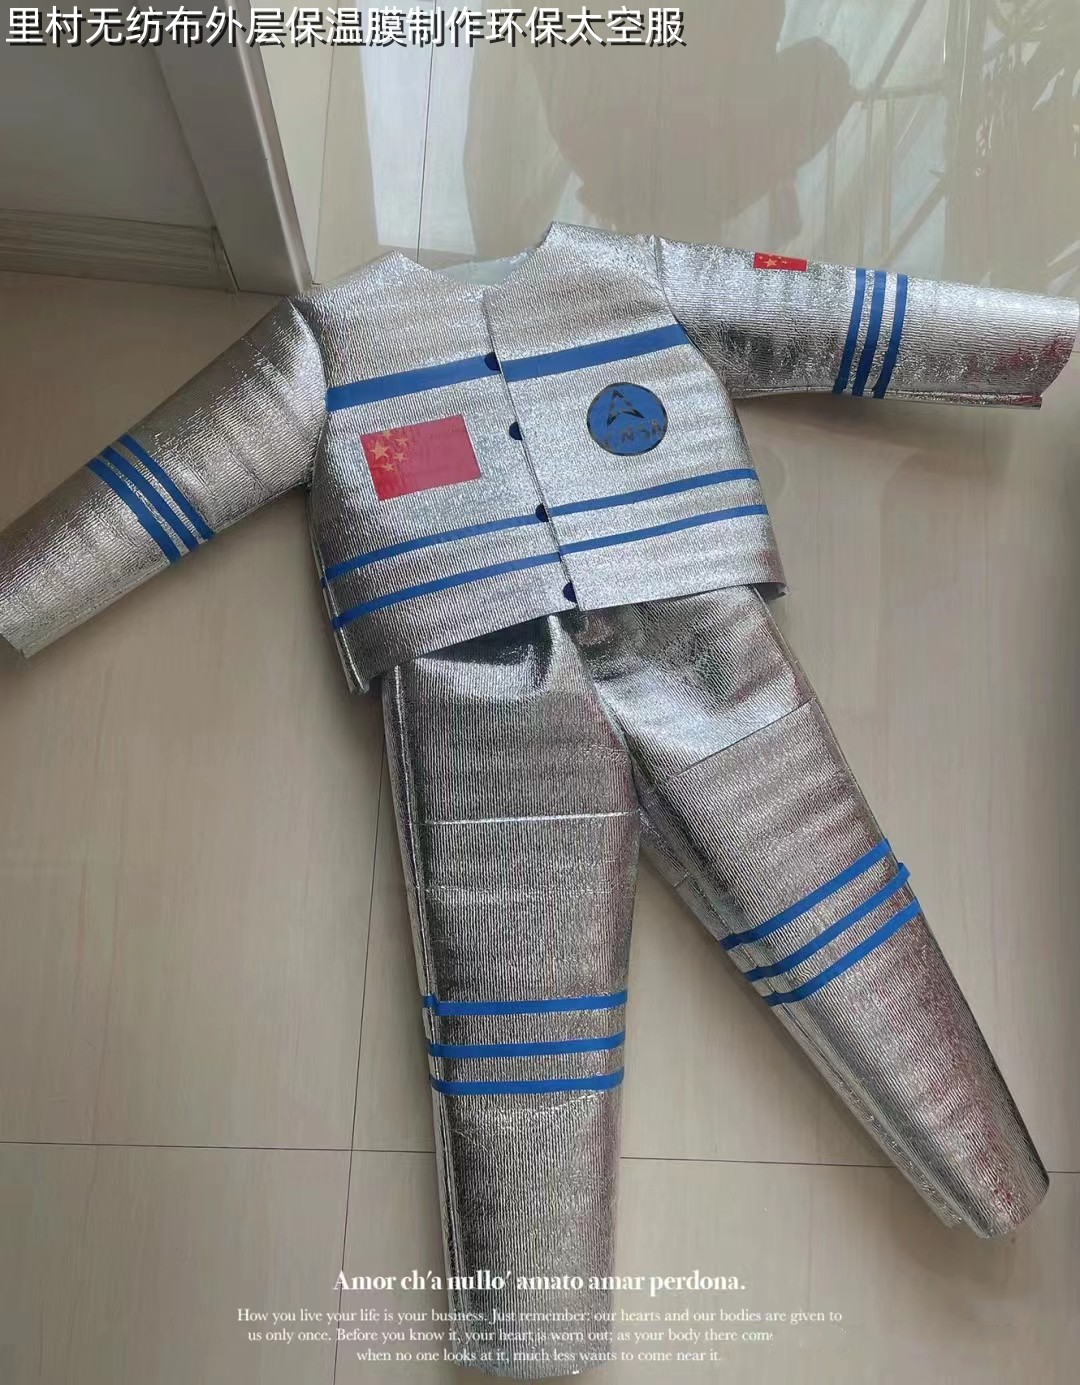 环保服装儿童时装秀男童宇航员太空服成品手工制作diy材料包走秀